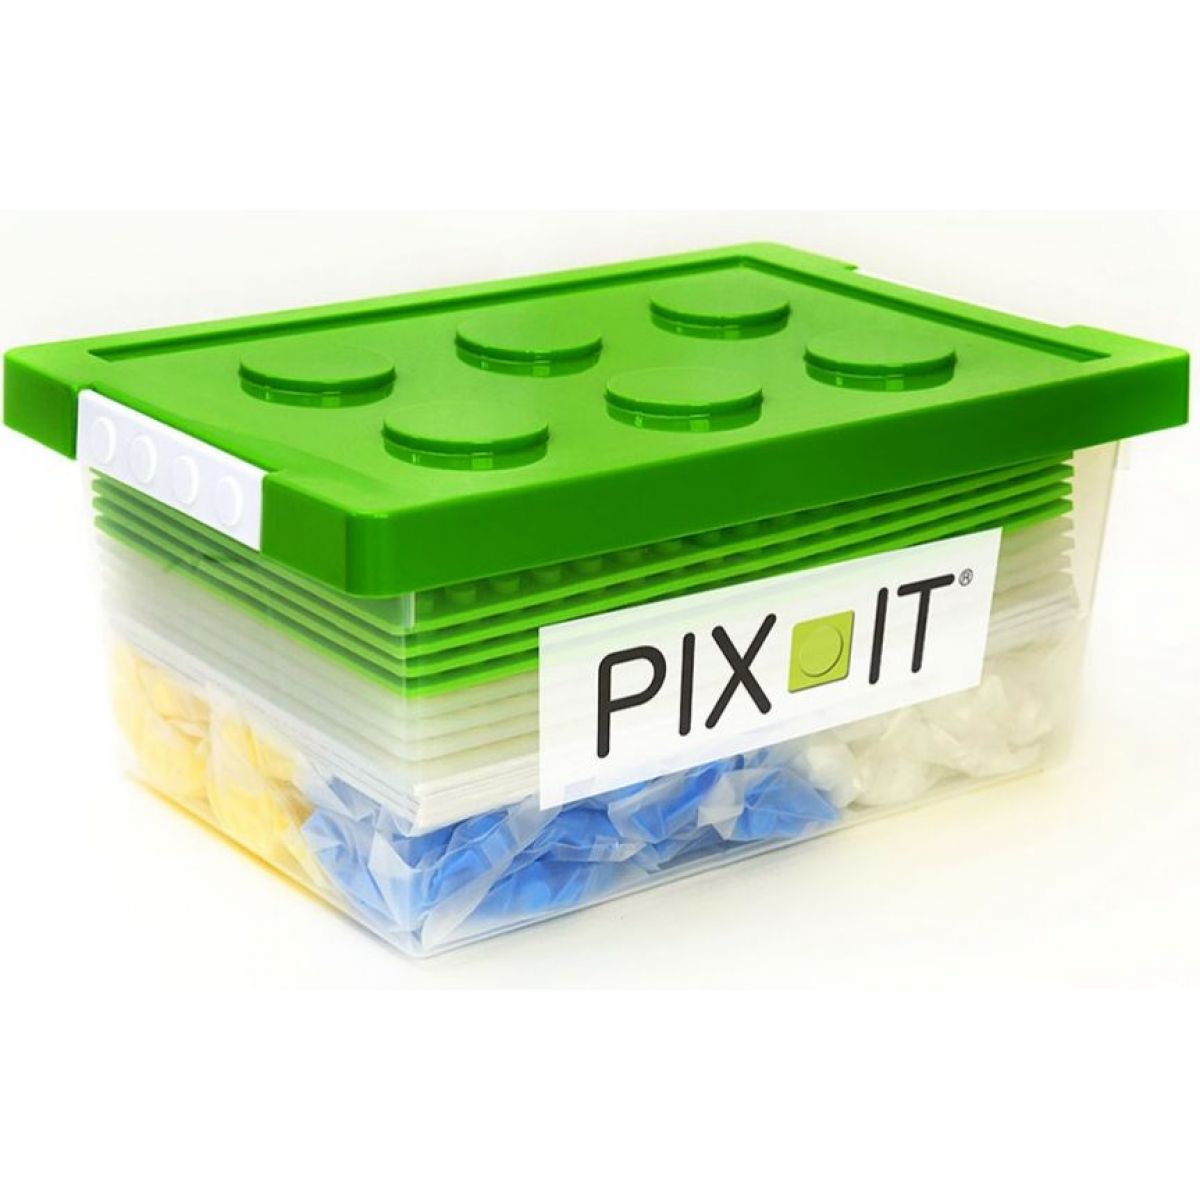 Stavebnice PIX-IT Box pro školy a školky